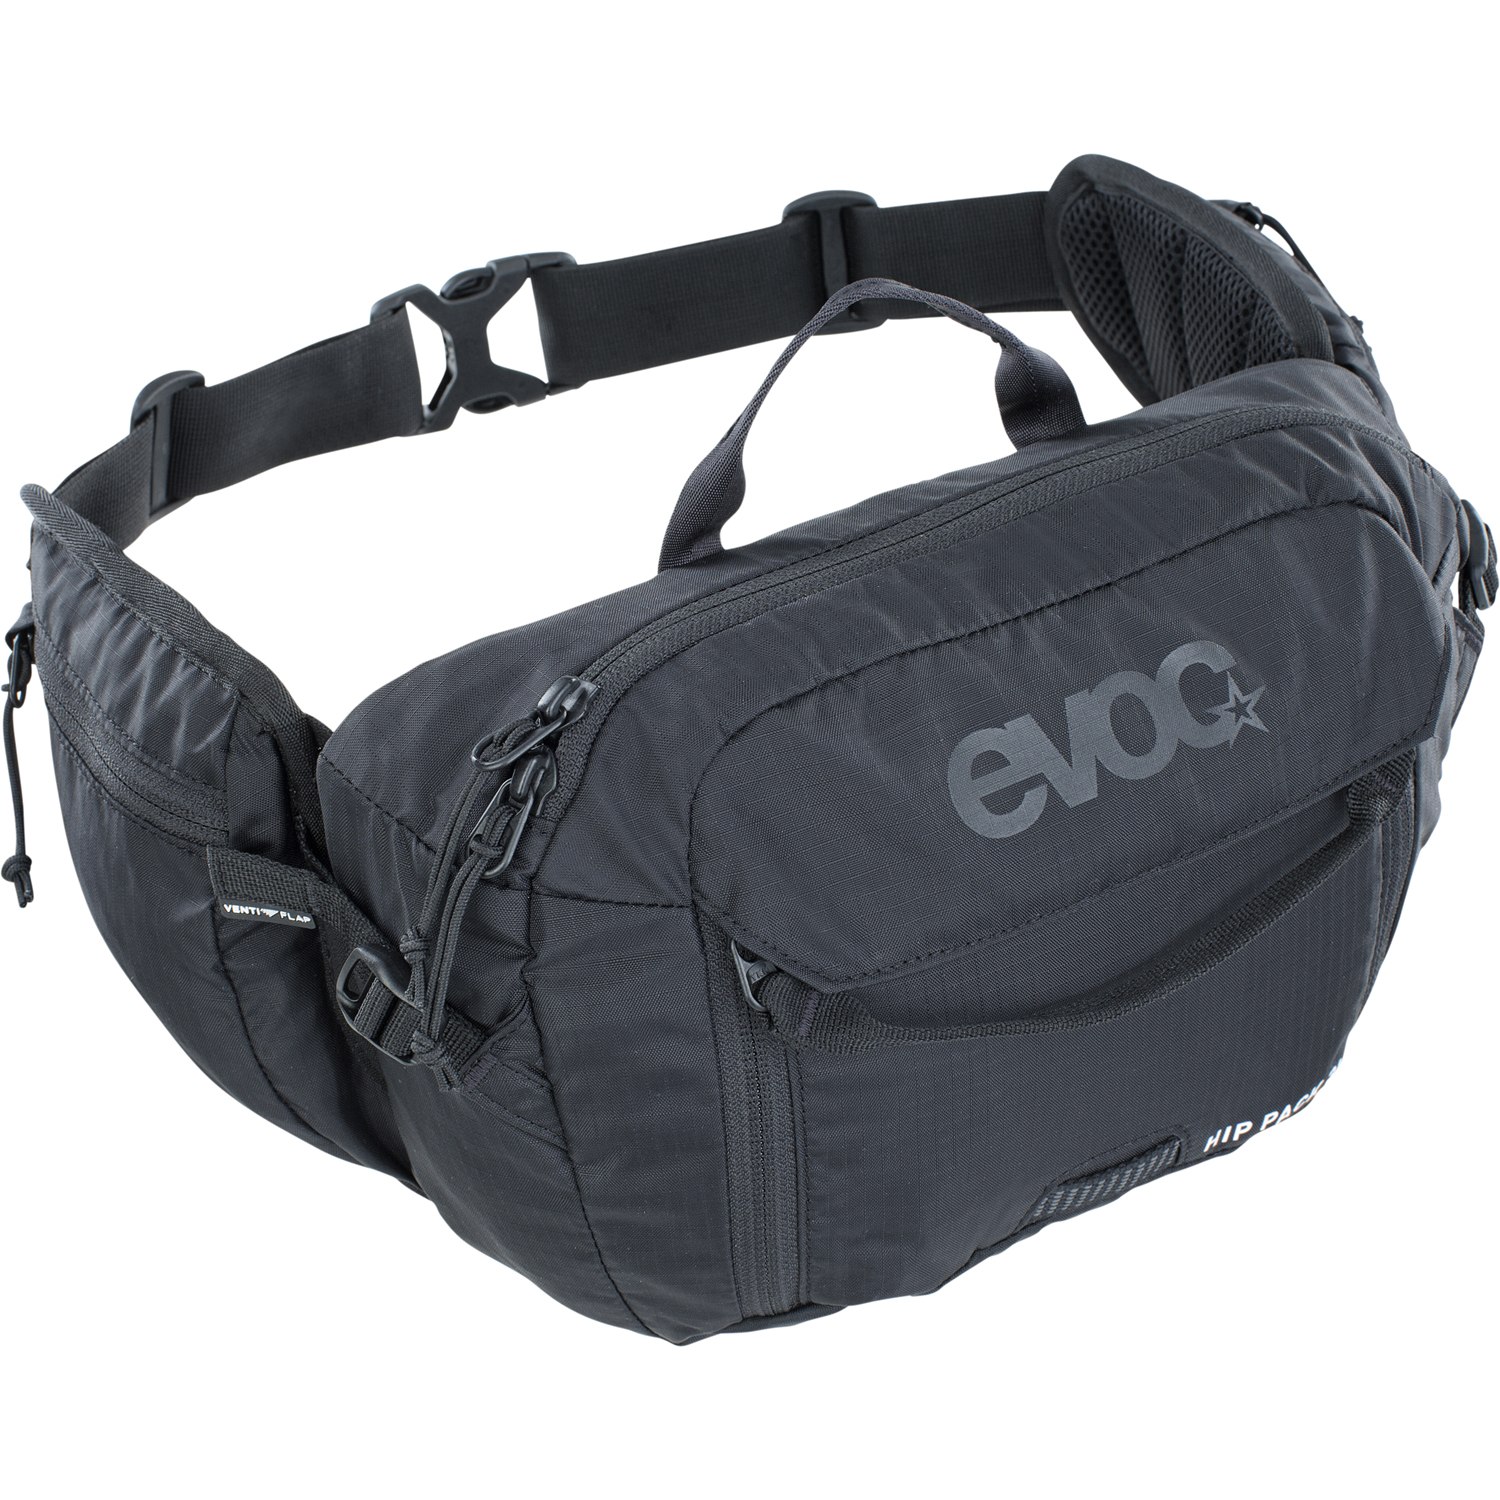 Produktbild von EVOC Hip Pack 3L Hüfttasche - Schwarz